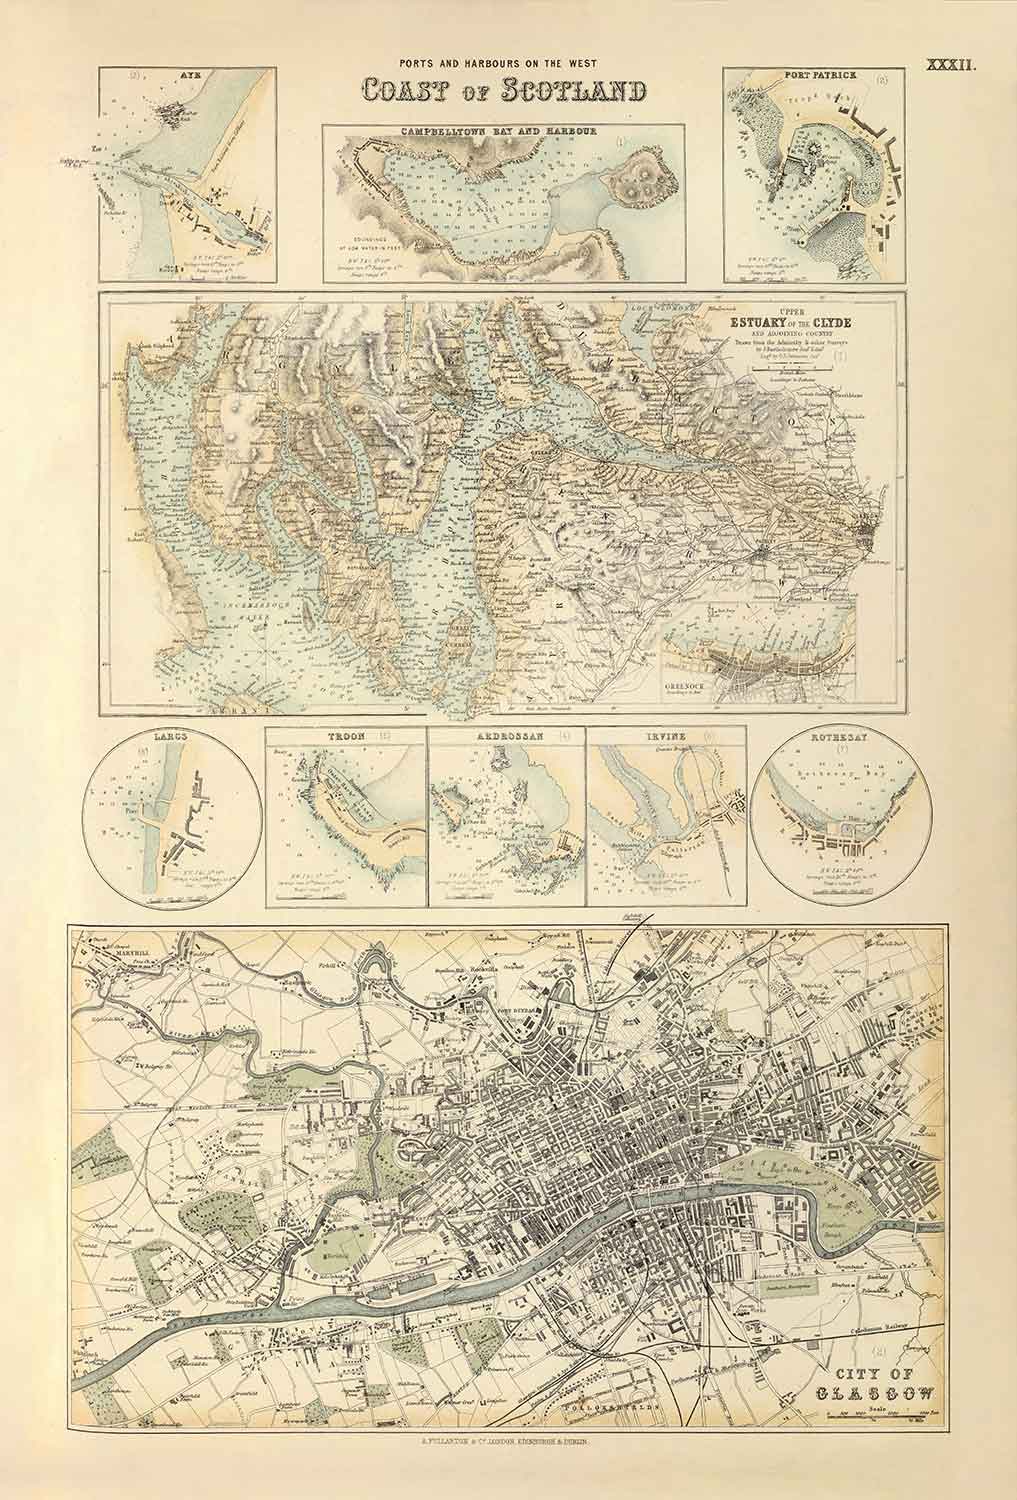 Alte Karte der Häfen an der Westküste Schottlands, 1872 von Fullarton - Glasgow, Largs, Portpatrick, Irvine, Ayr